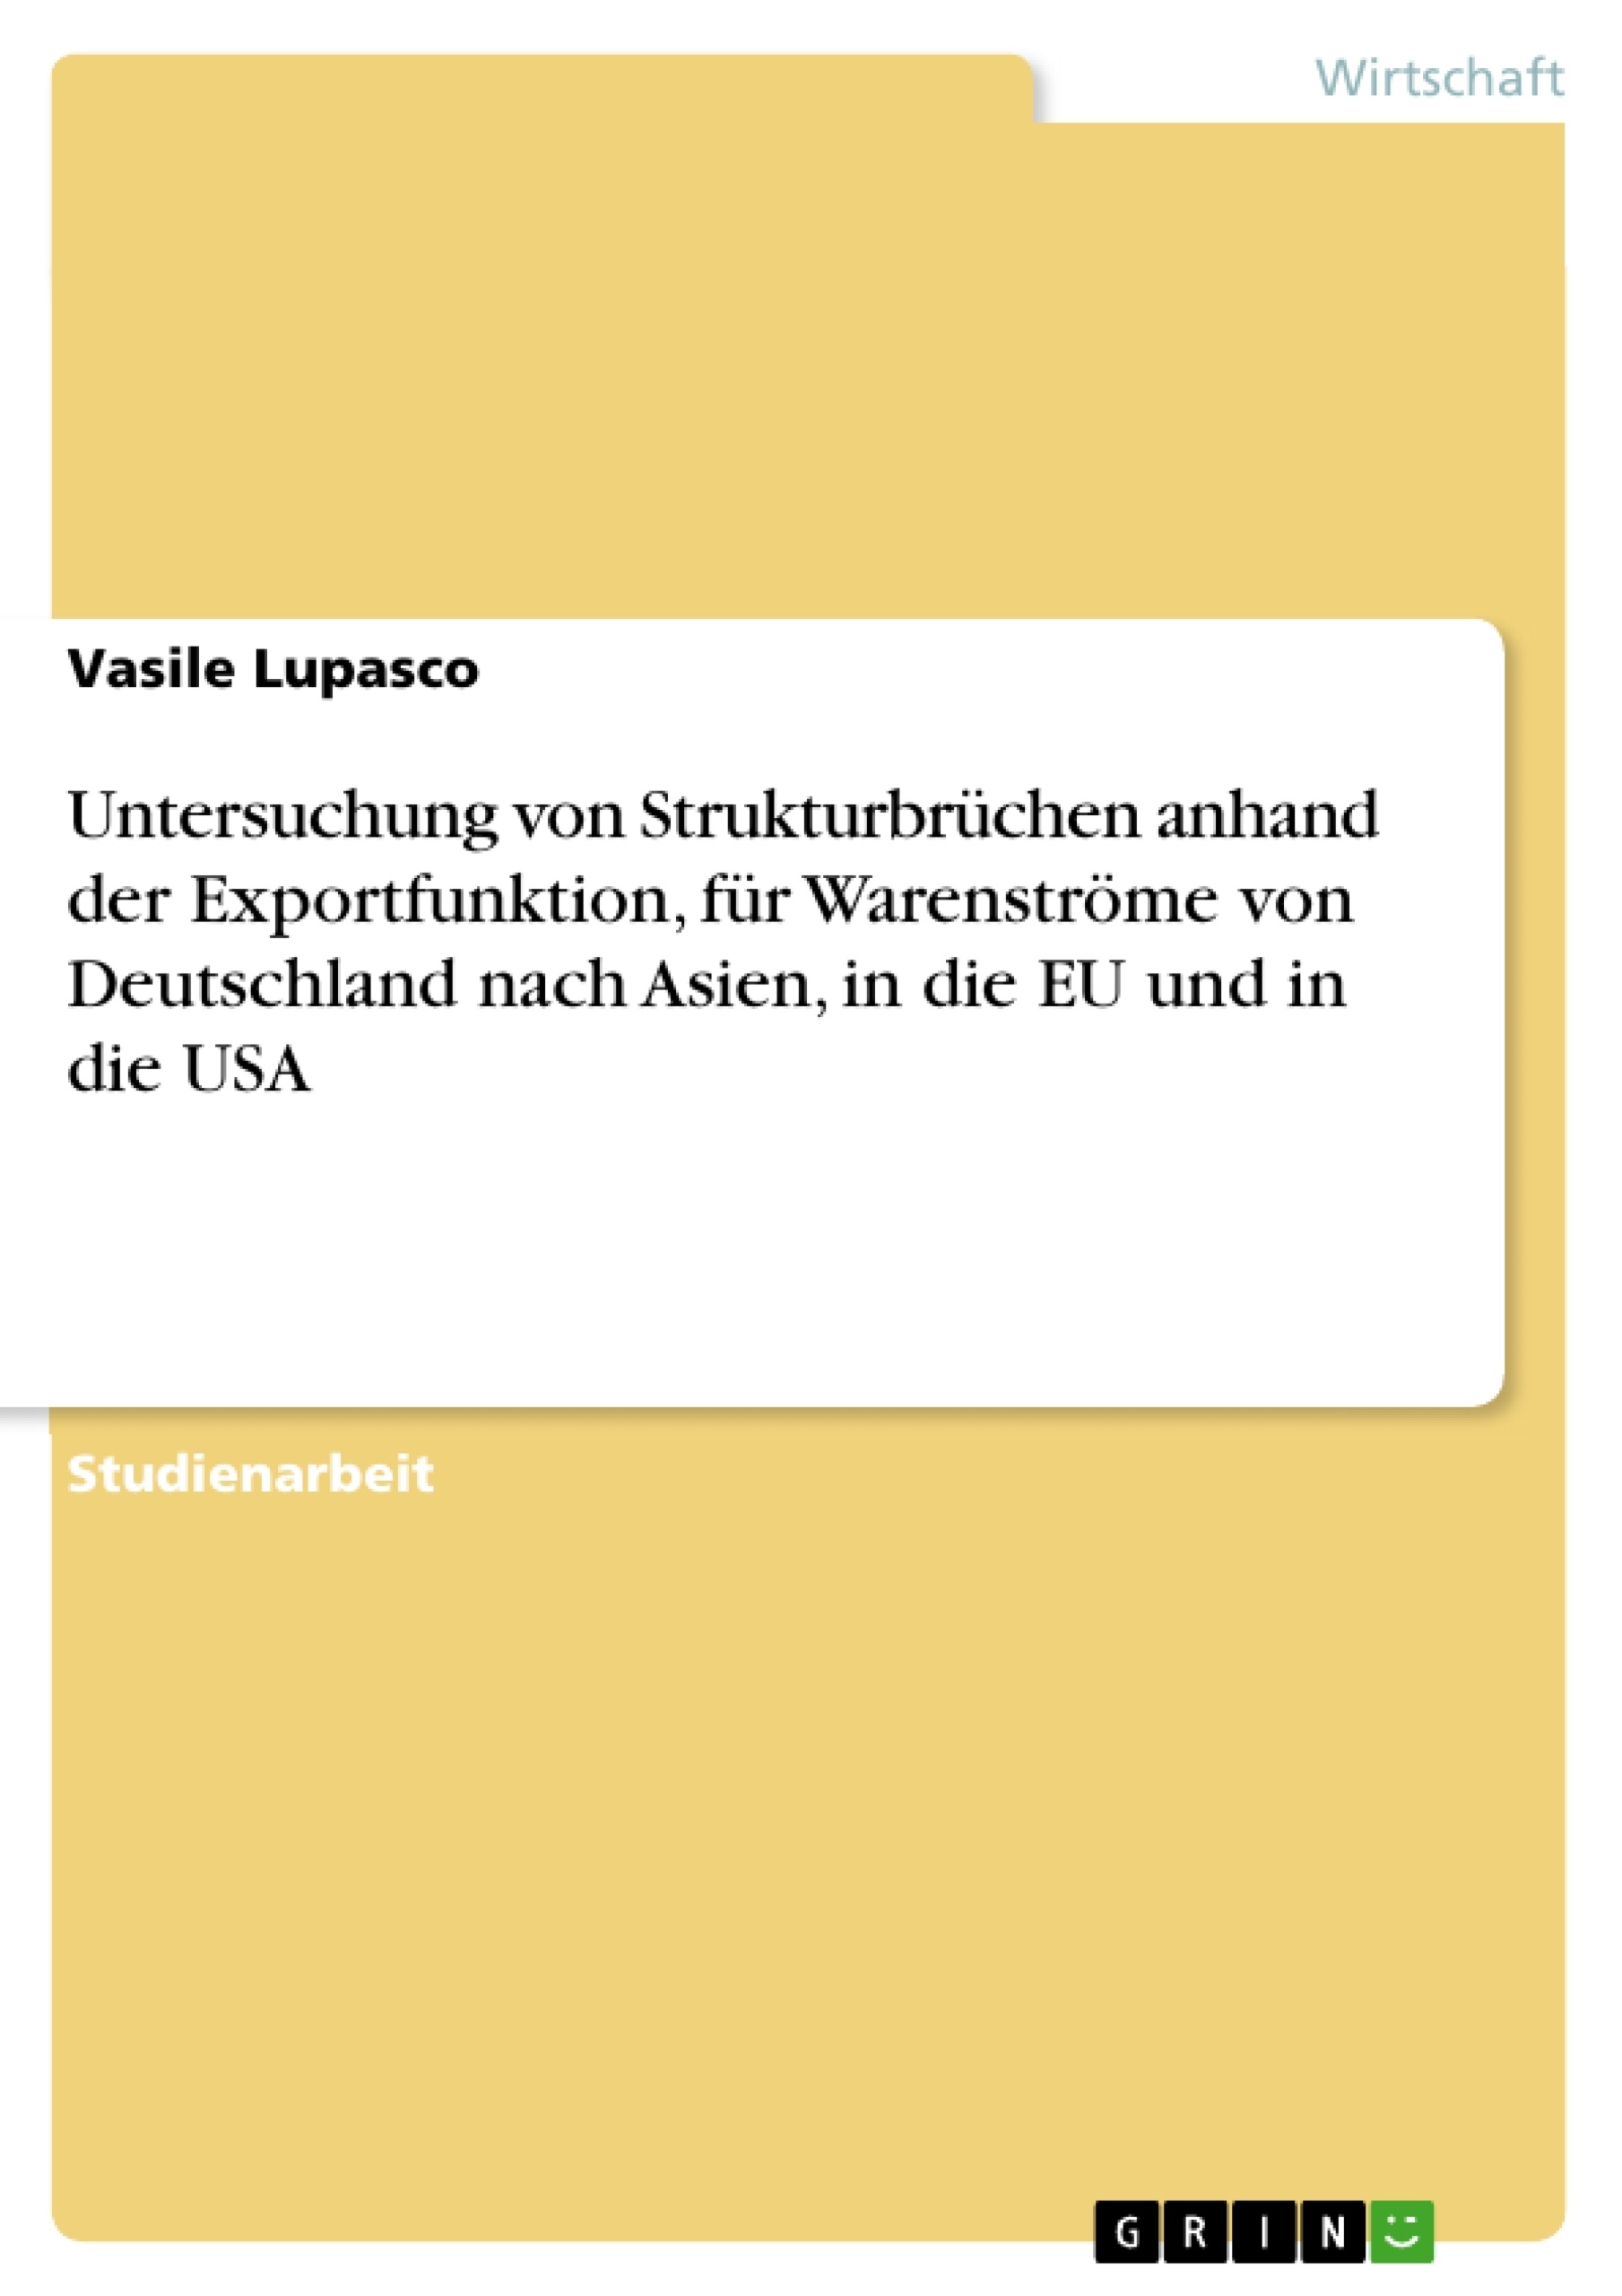 Titre: Untersuchung von Strukturbrüchen anhand der Exportfunktion, für Warenströme von Deutschland nach Asien, in die EU und in die USA